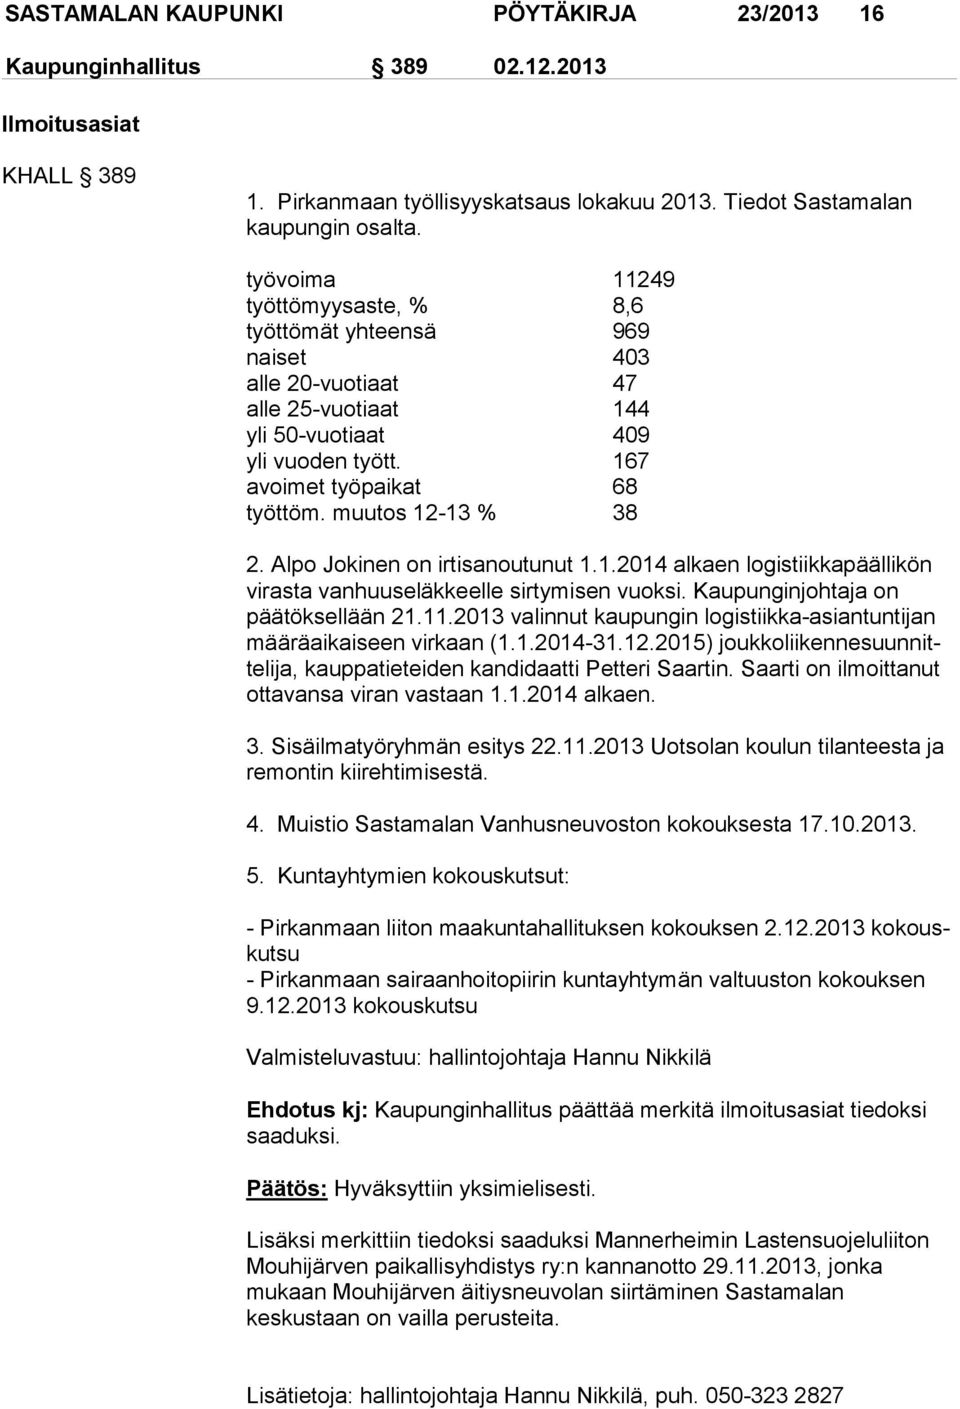 muutos 12-13 % 38 2. Alpo Jokinen on irtisanoutunut 1.1.2014 alkaen lo gis tiik ka pääl li kön virasta vanhuuseläkkeelle sirtymisen vuoksi. Kaupunginjohtaja on päätöksellään 21.11.